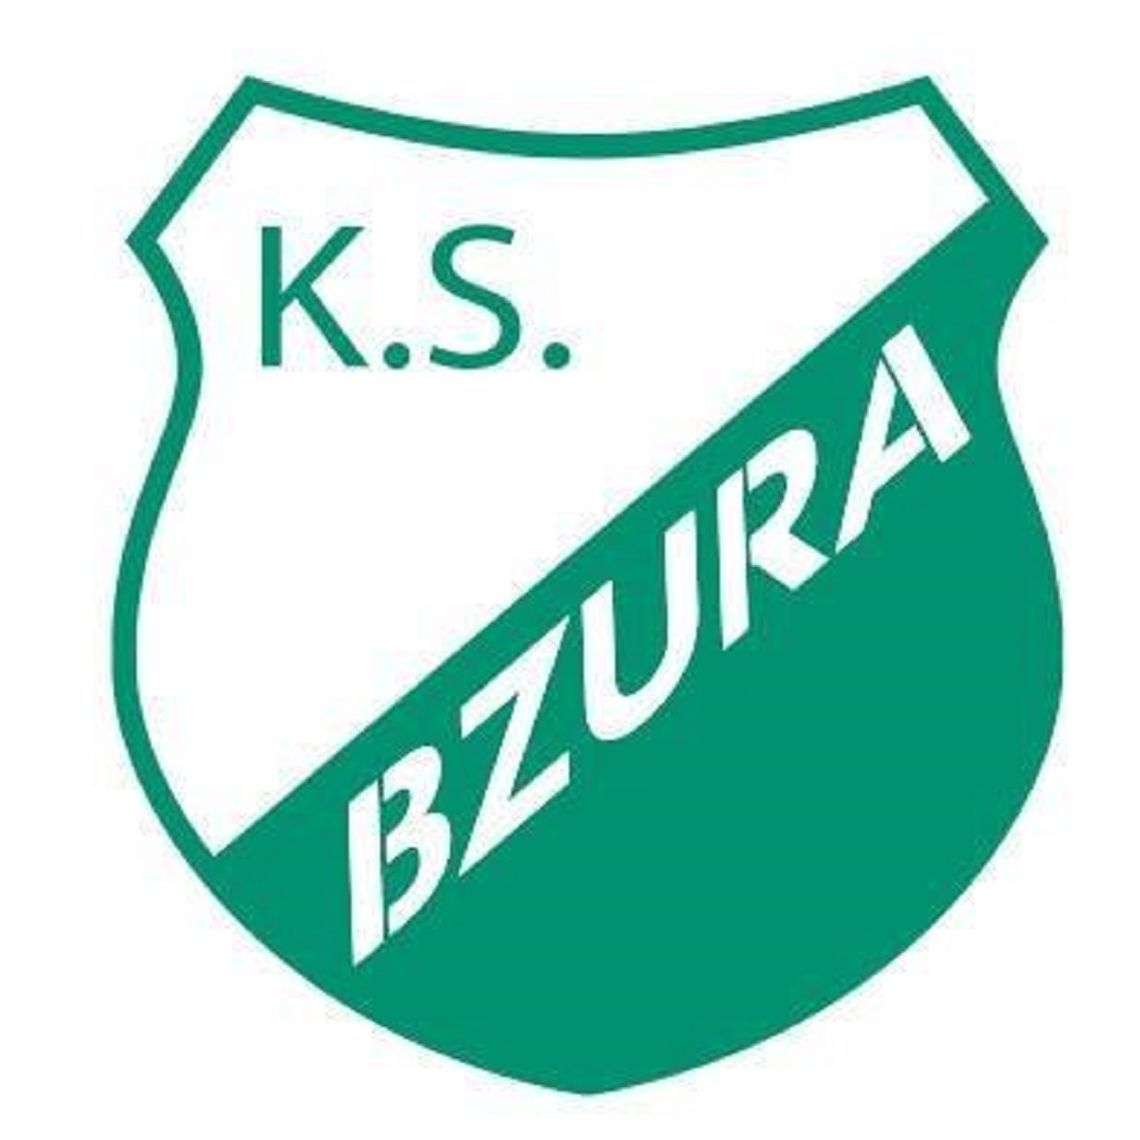 Nowe władze w Bzurze